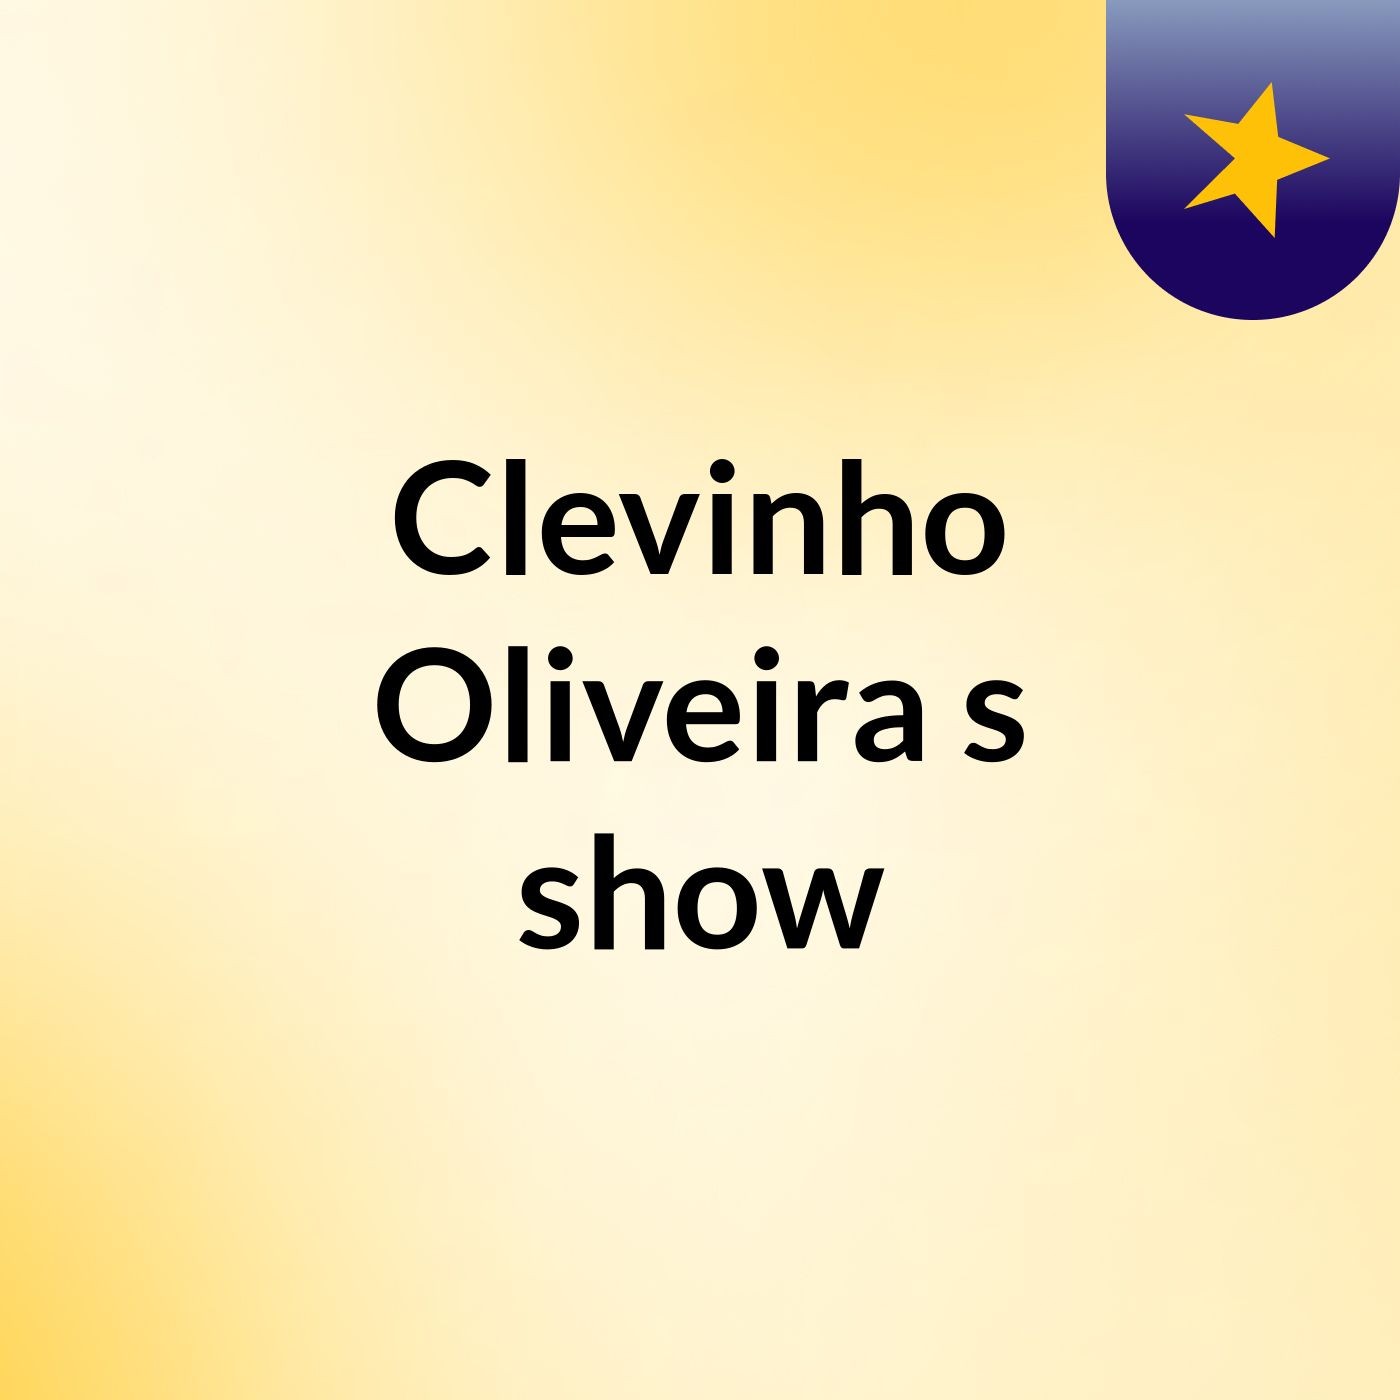 Clevinho Oliveira's show